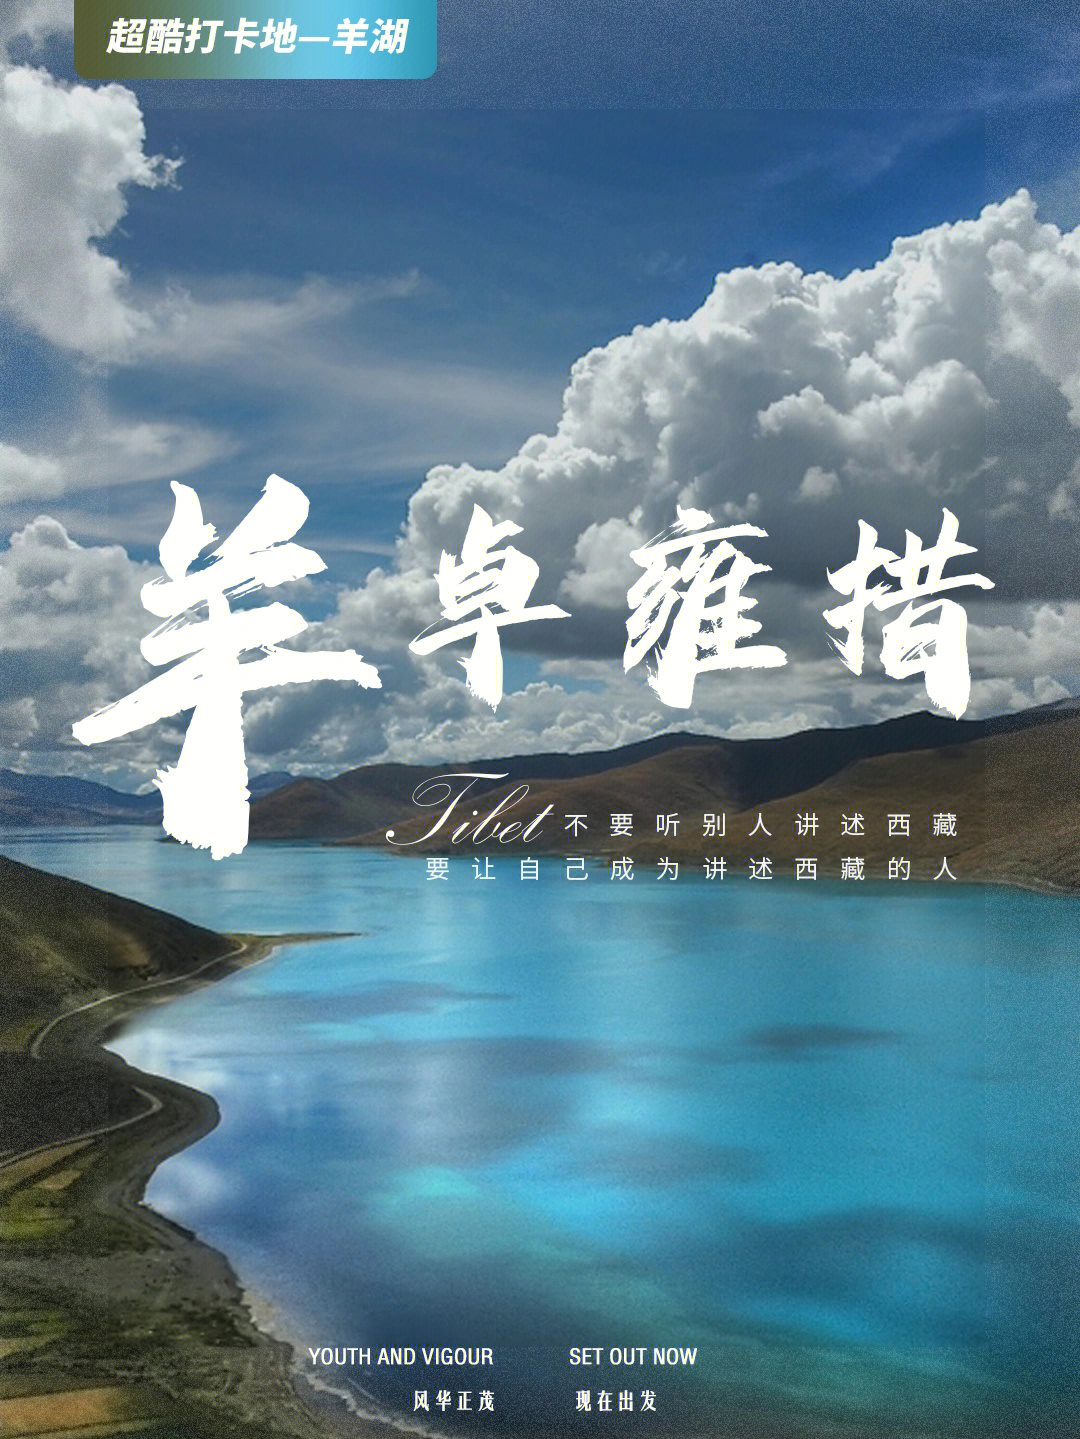 97天上仙境,人间羊湖97在西藏高原,有一颗掉落在人间的蓝宝石96